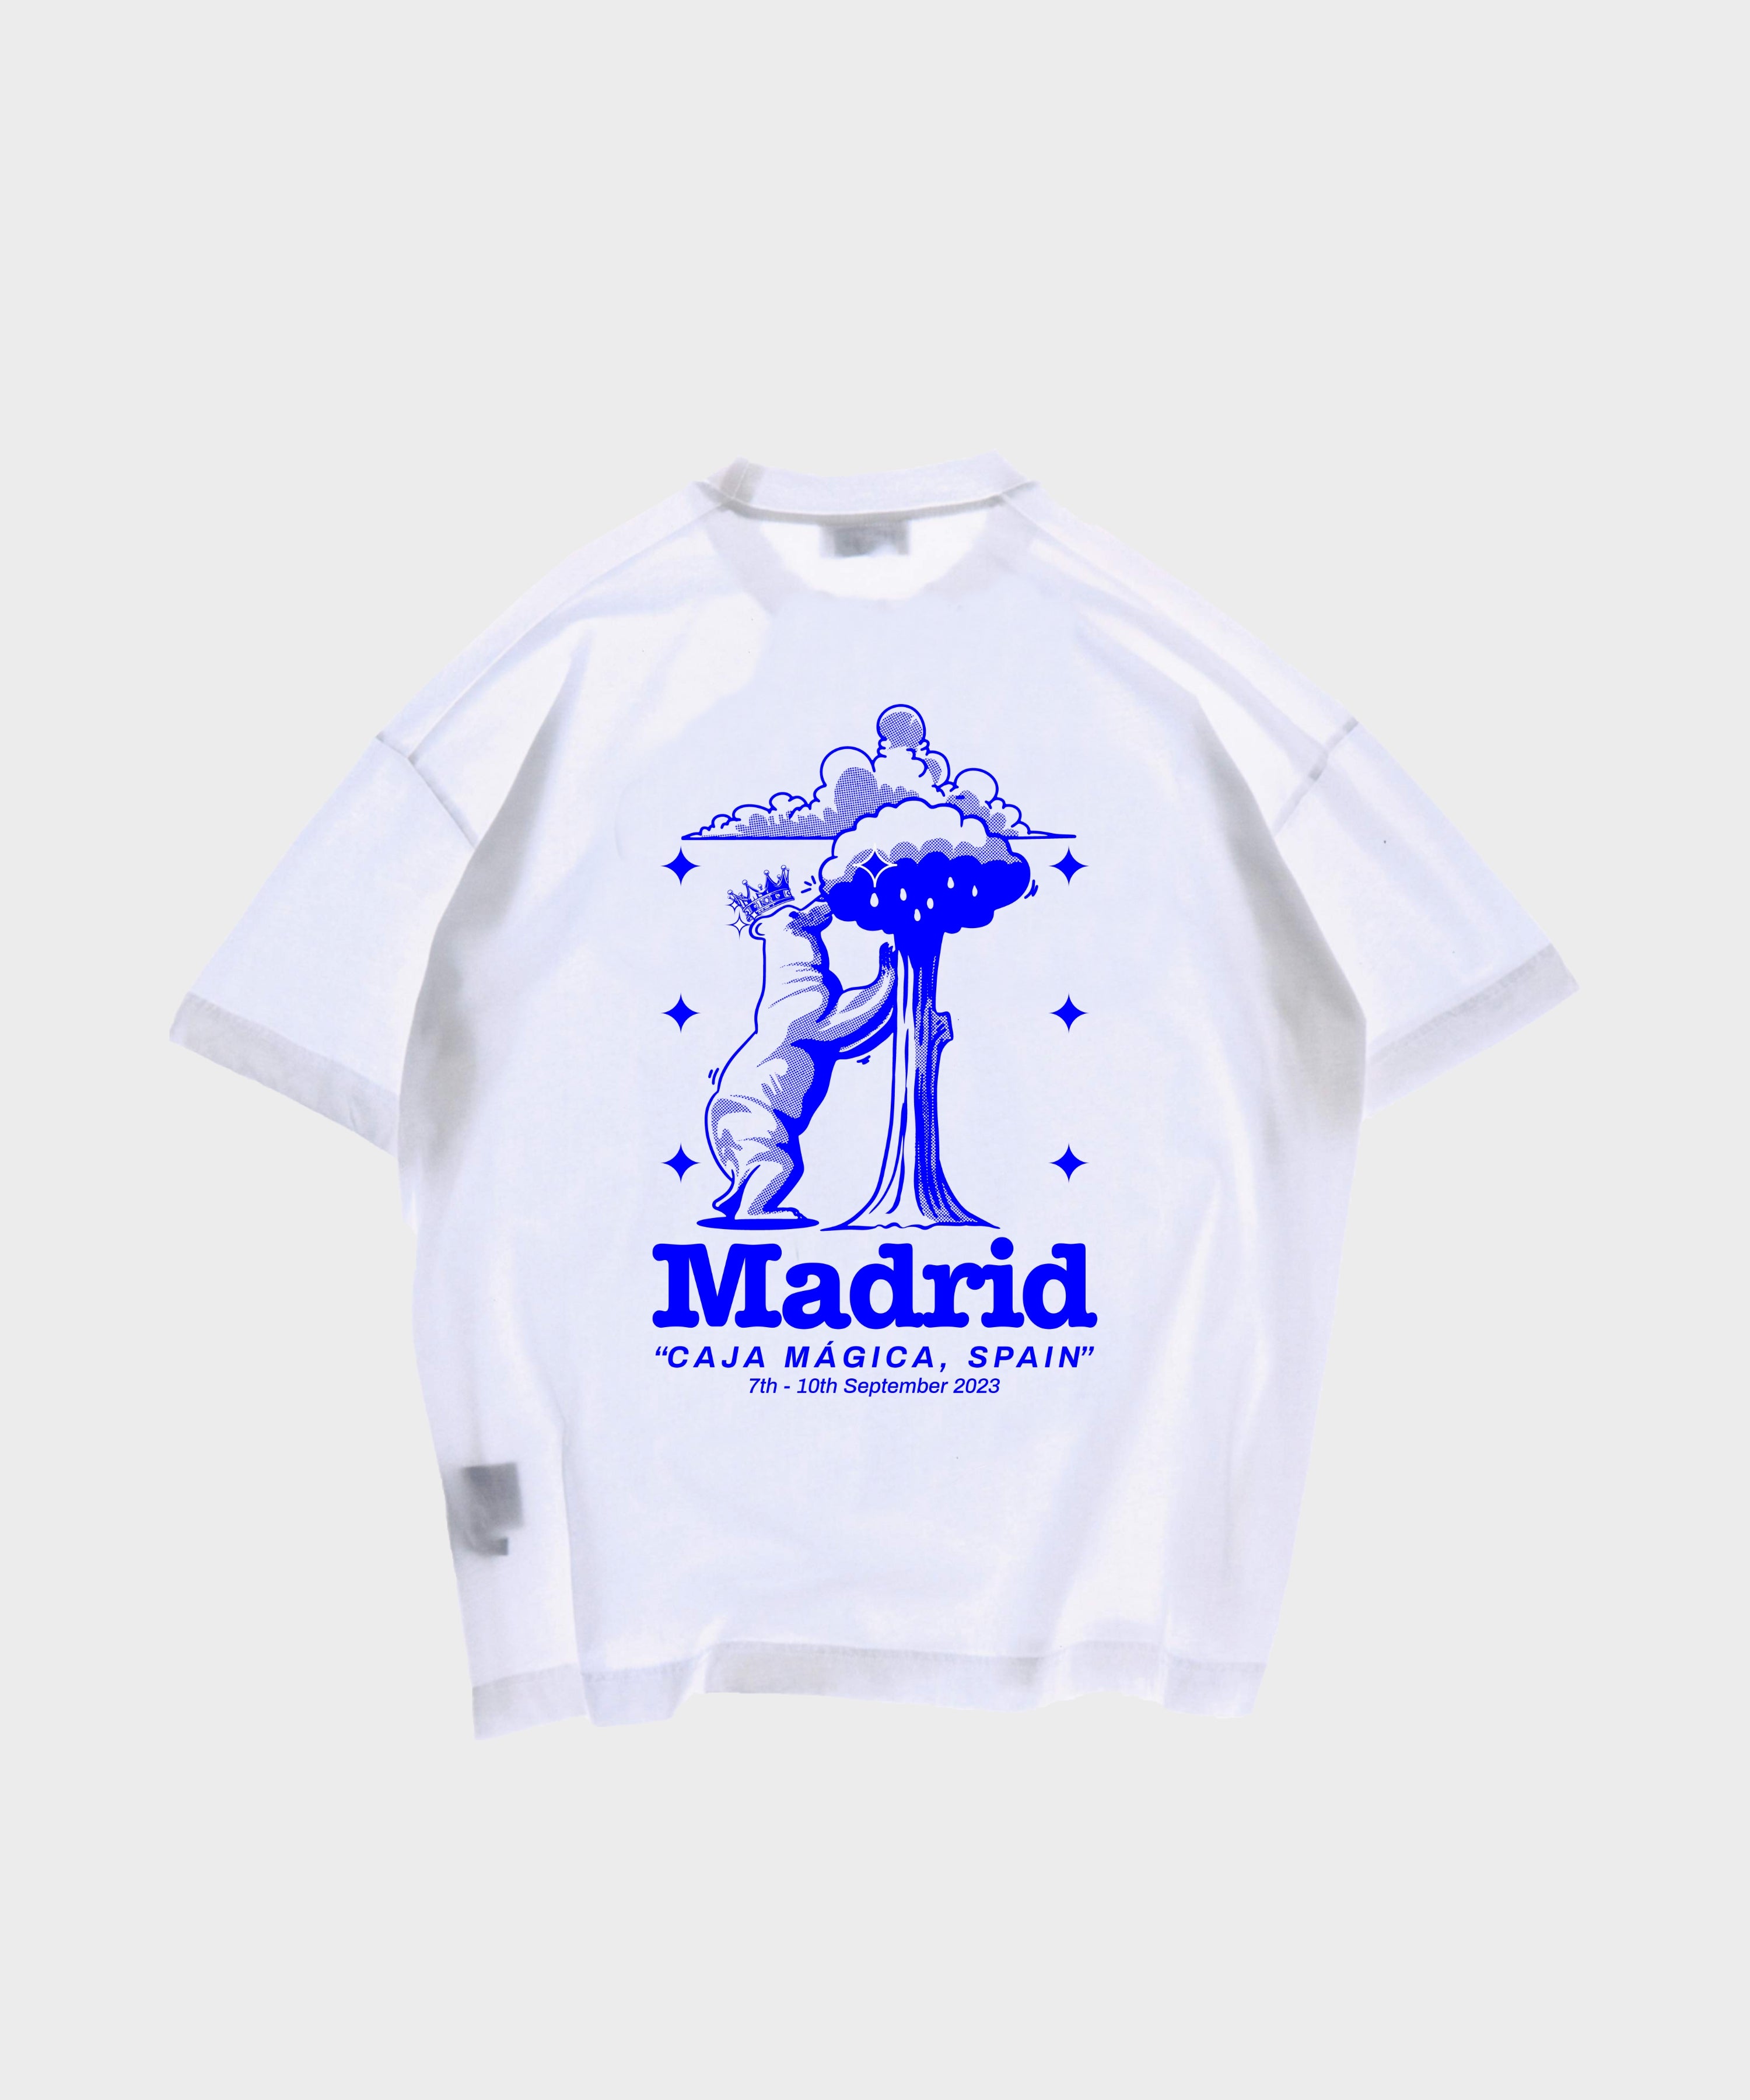 Camiseta Madrid